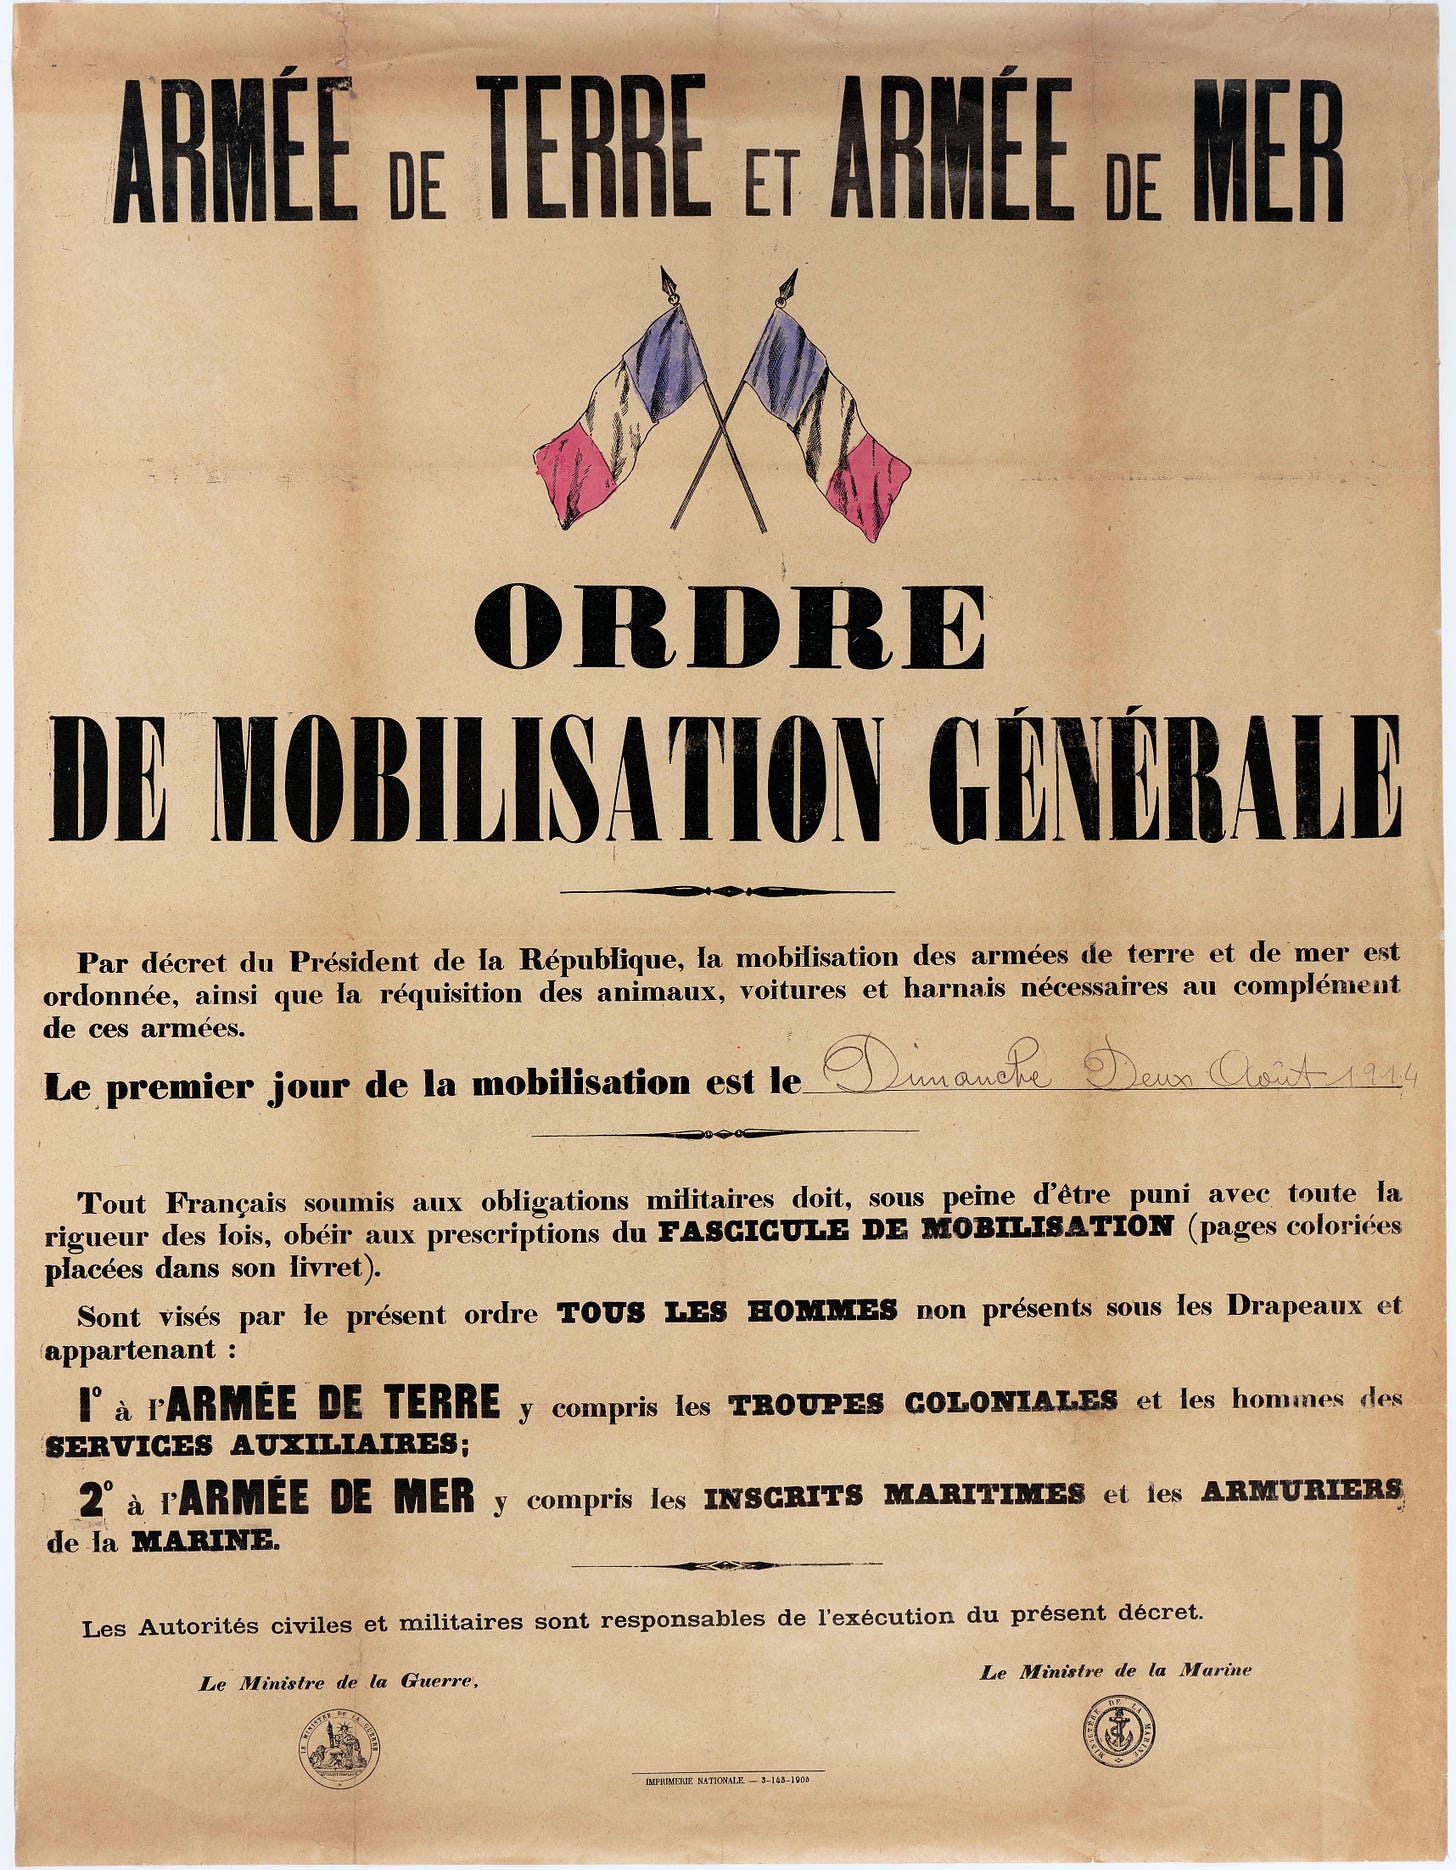 Affiche publique appelant à la mobilisation des armées françaises, 2 août 1914